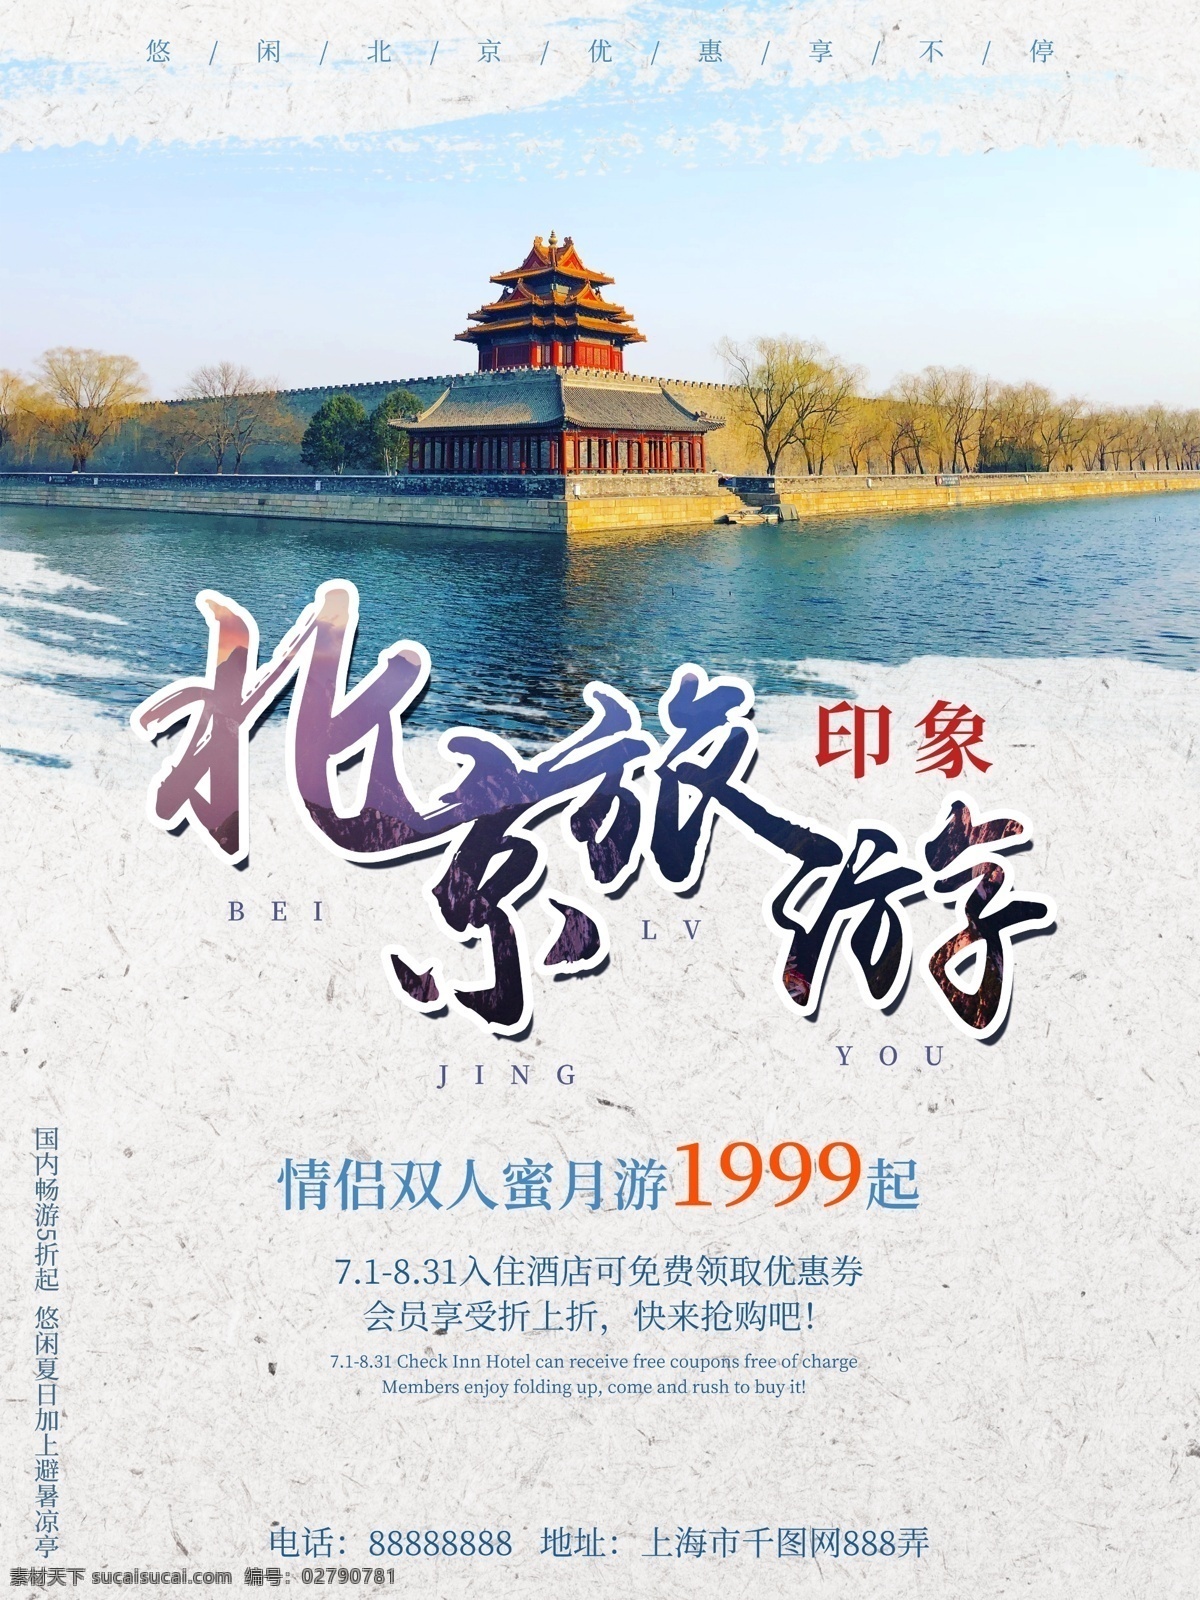 北京故宫 旅行社 促销 旅游 海报 北京 故宫 旅游海报